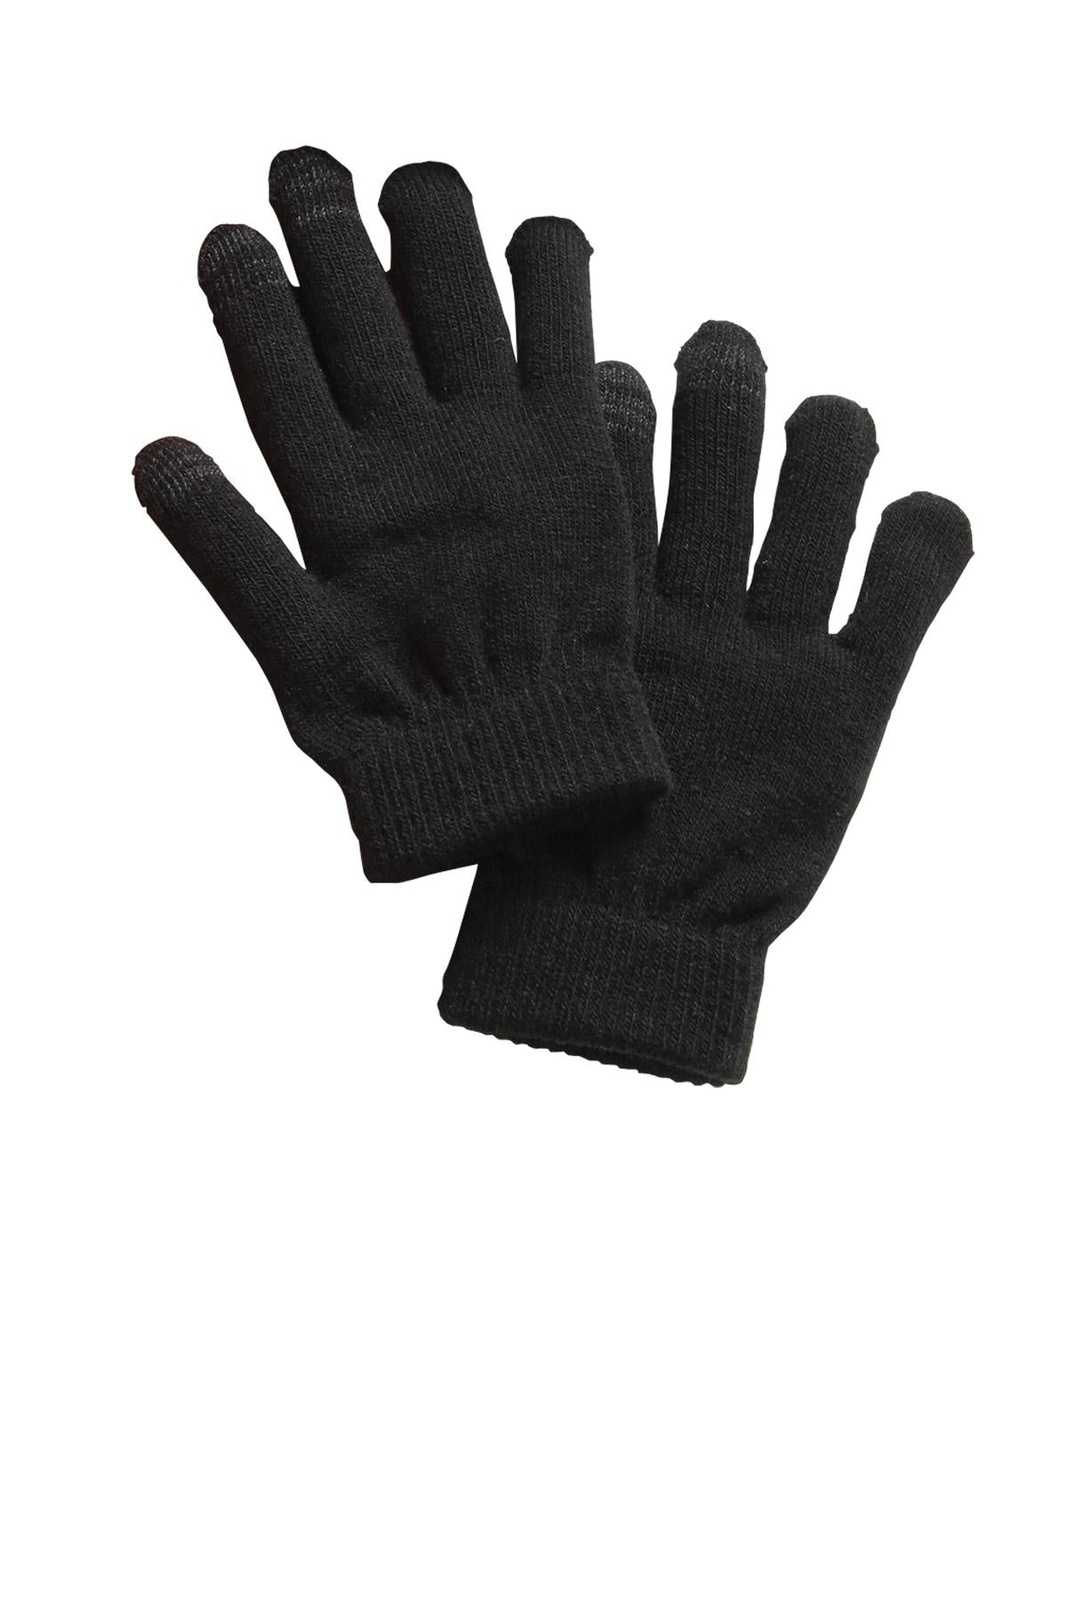 Sport-Tek STA01 Spectator Gloves - Black - HIT a Double - 1